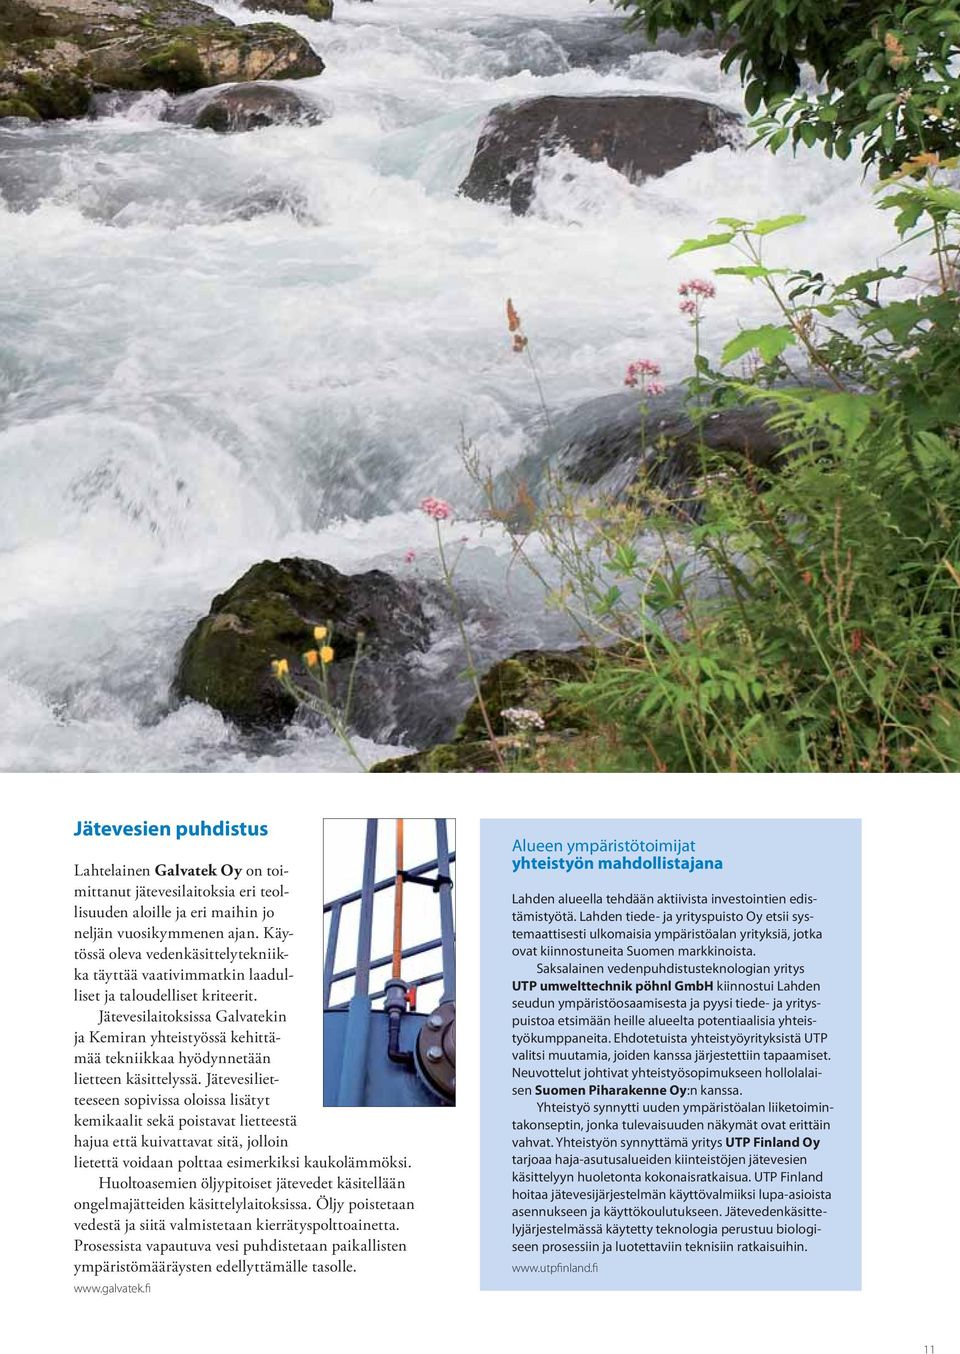 Jätevesilaitoksissa Galvatekin ja Kemiran yhteistyössä kehittämää tekniikkaa hyödynnetään lietteen käsittelyssä.